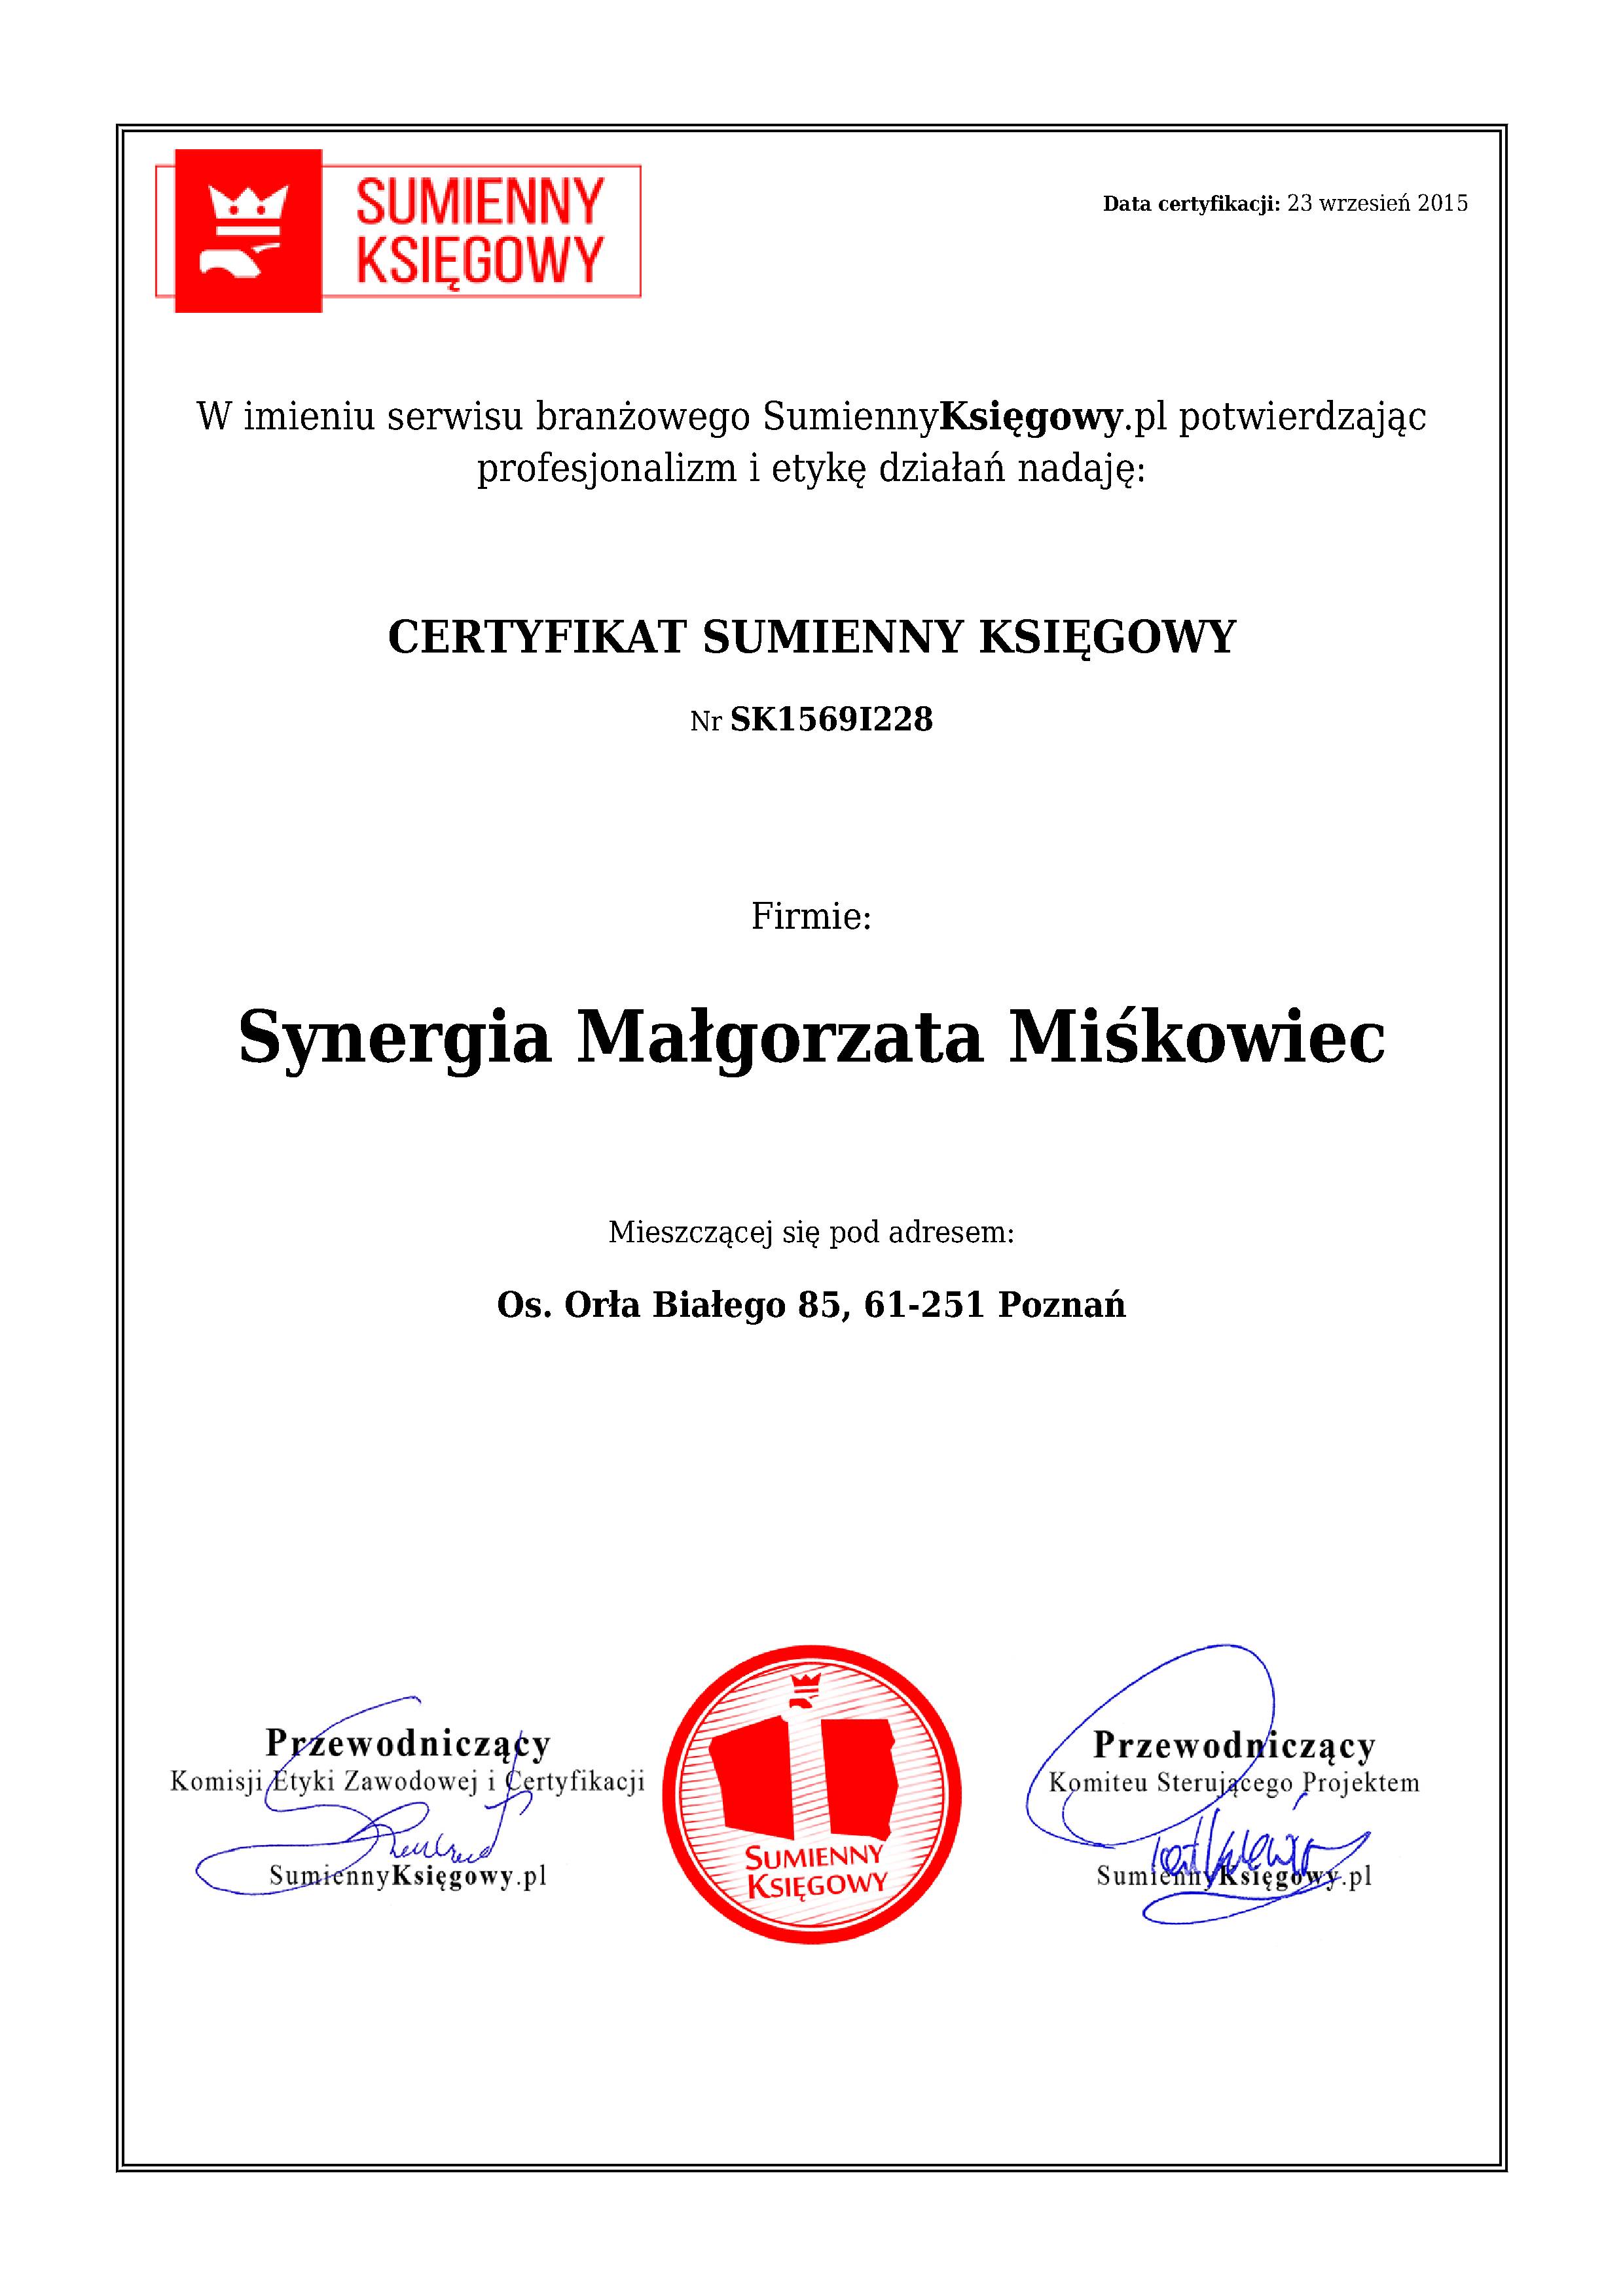 Certyfikat Synergia Małgorzata Miśkowiec